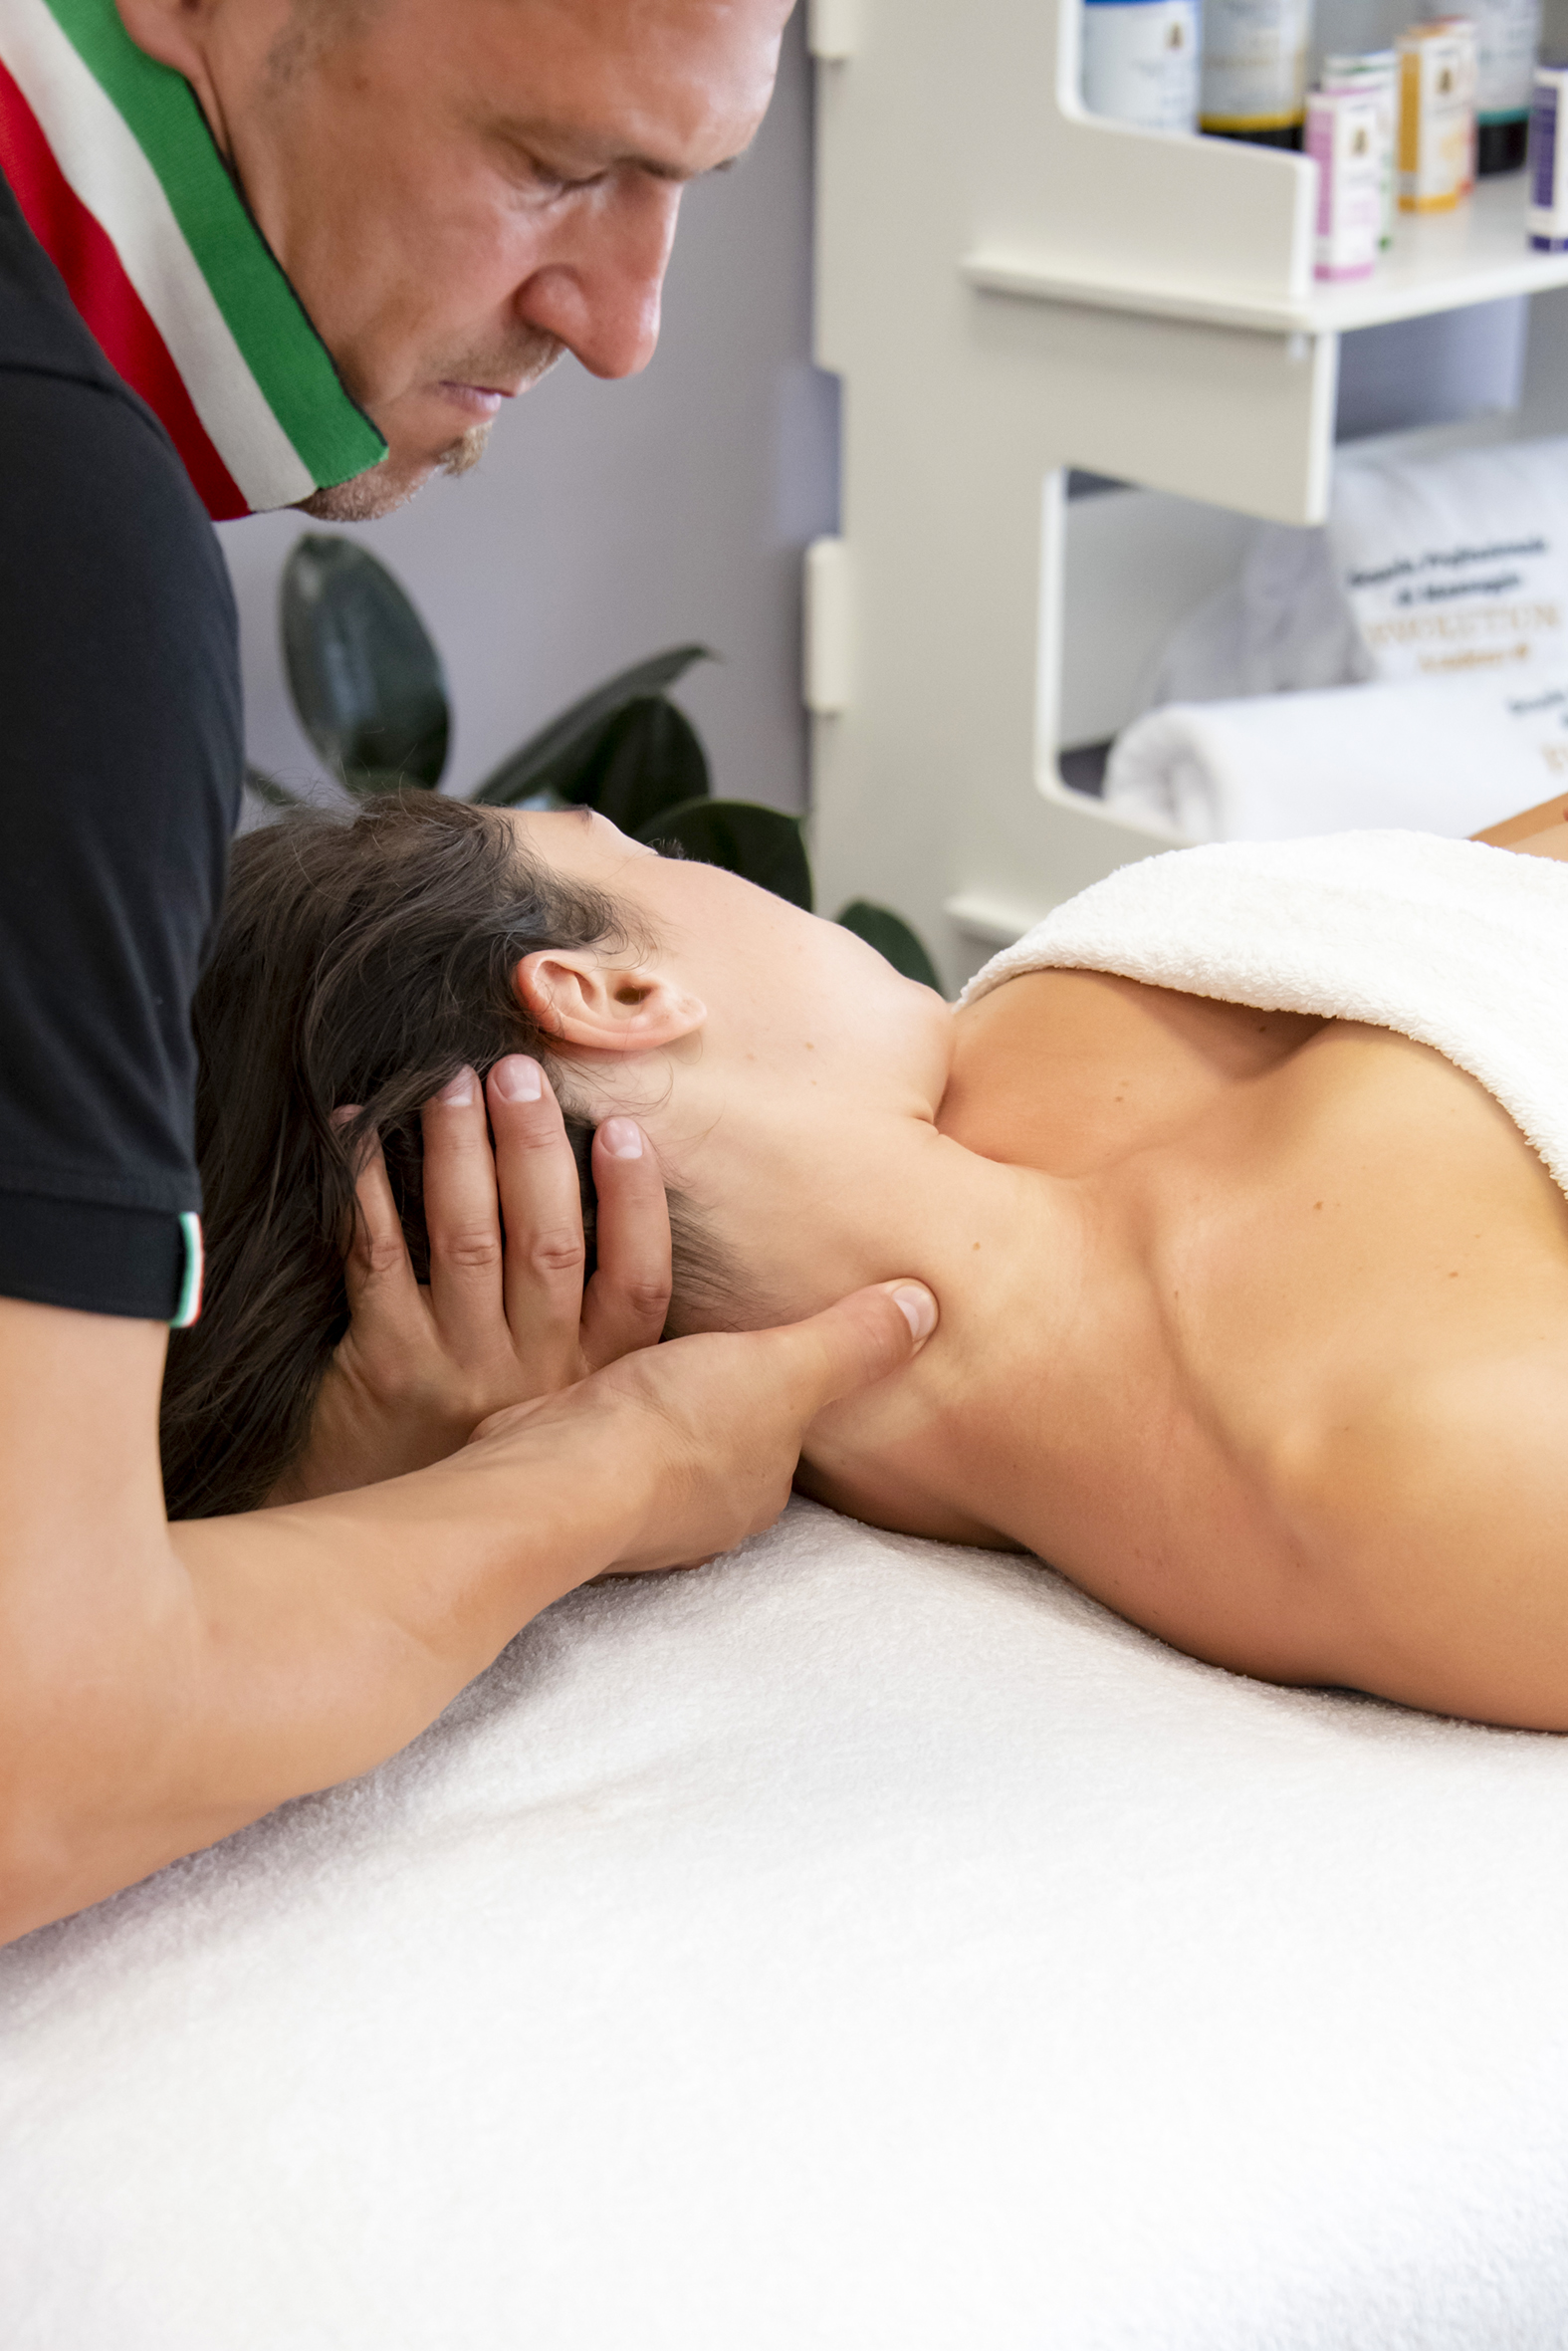 Perché partecipare al corso di massaggio cervicale